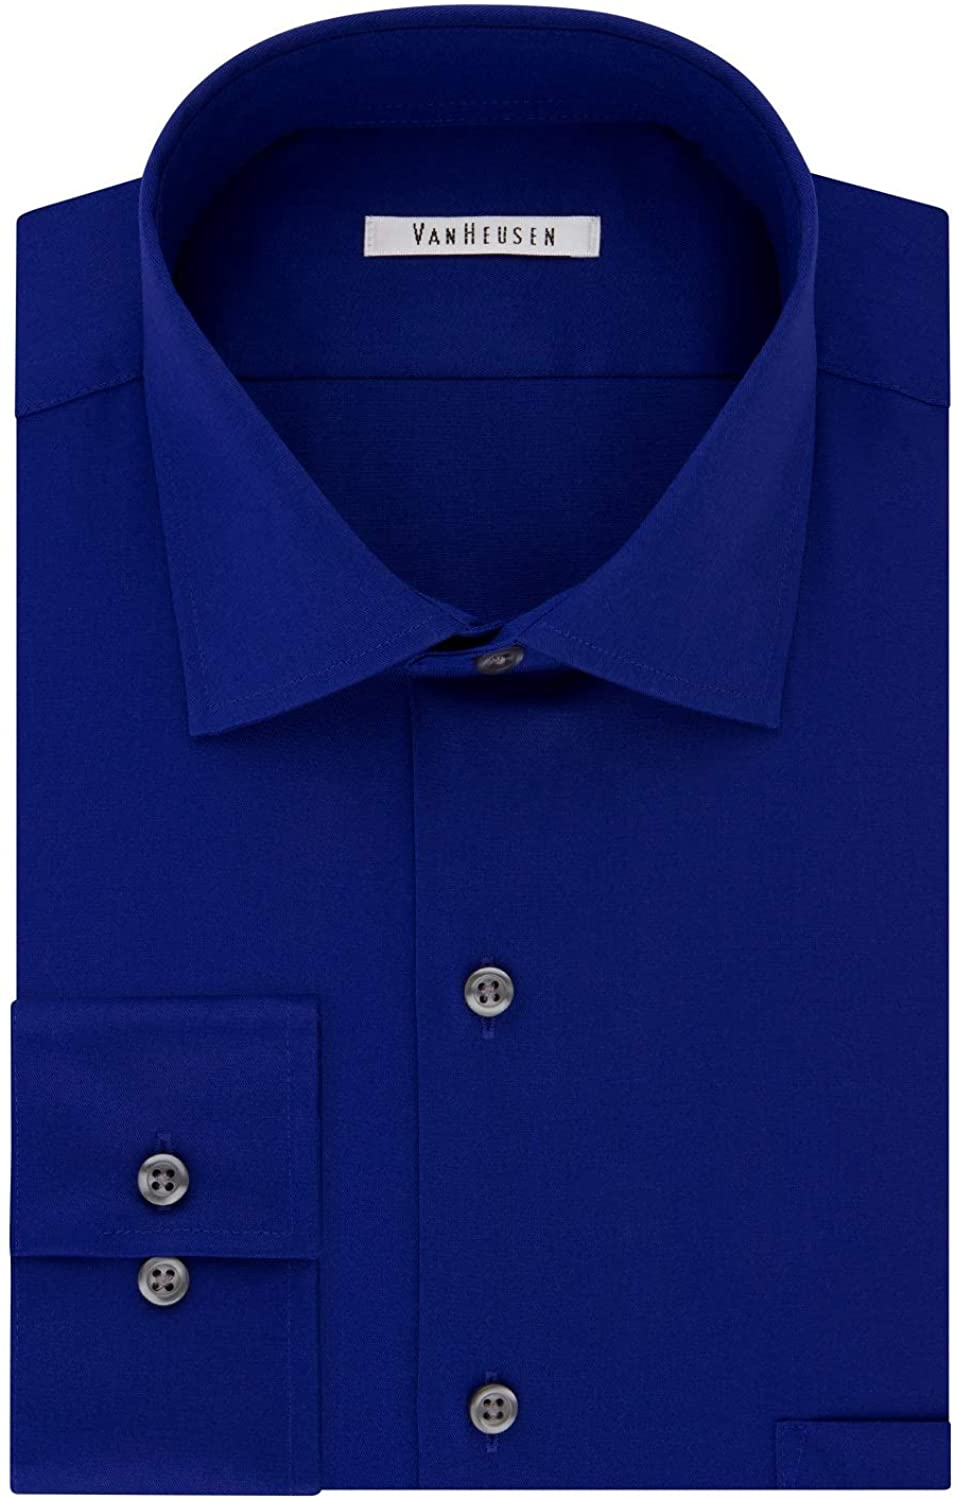 Van Heusen Men's Dress Shirt Regular Fit Flex Collar, Royal Blue, Size ...